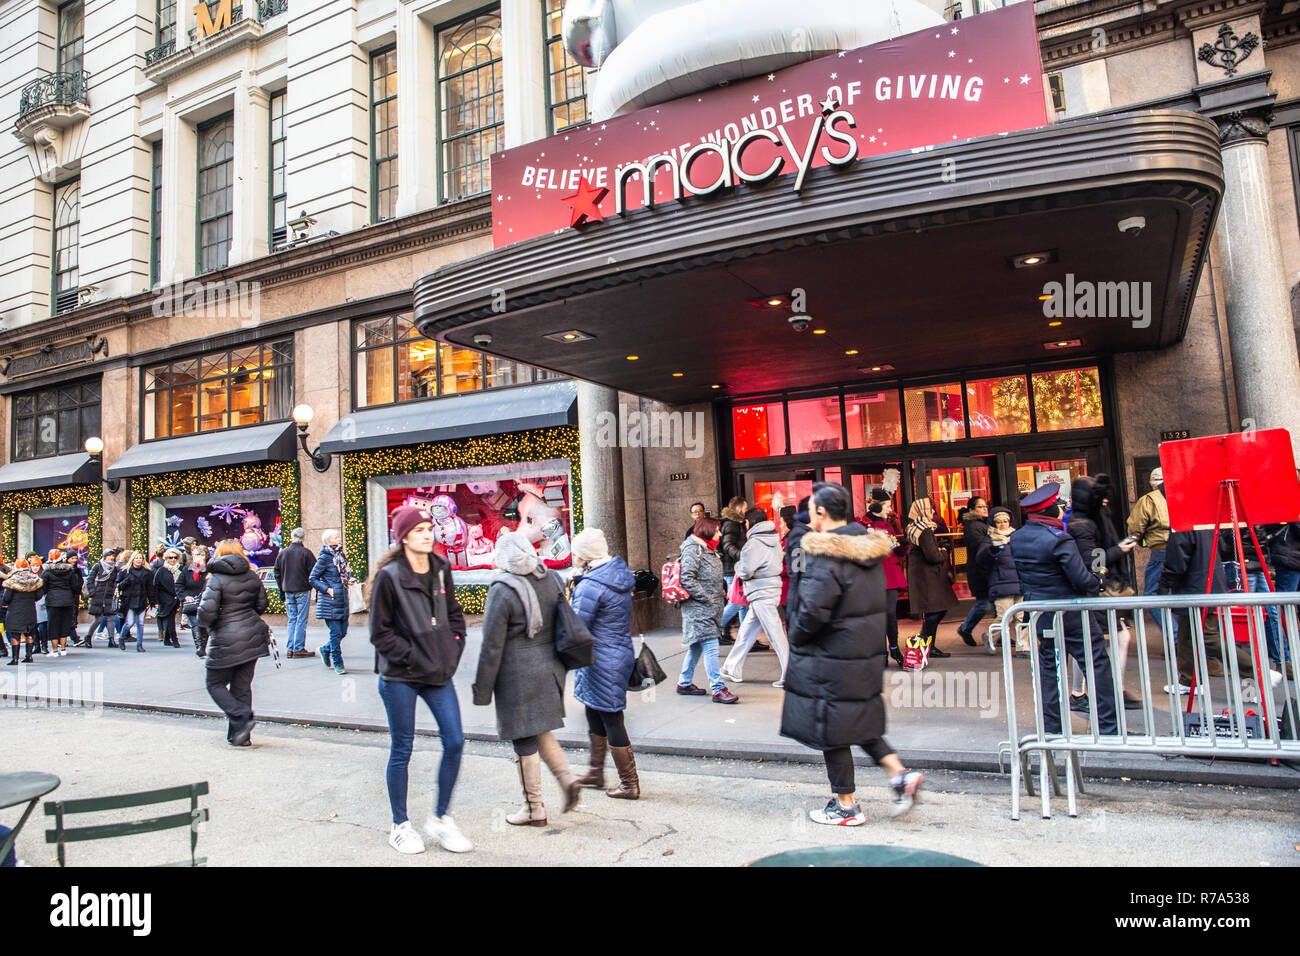 La CIUDAD DE NUEVA YORK, 7 de diciembre de 2018: Navidad en Nueva York escena en la calle desde el centro comercial Macy's en Herald Square en Manhattan con ventana de vacaciones di Foto de stock